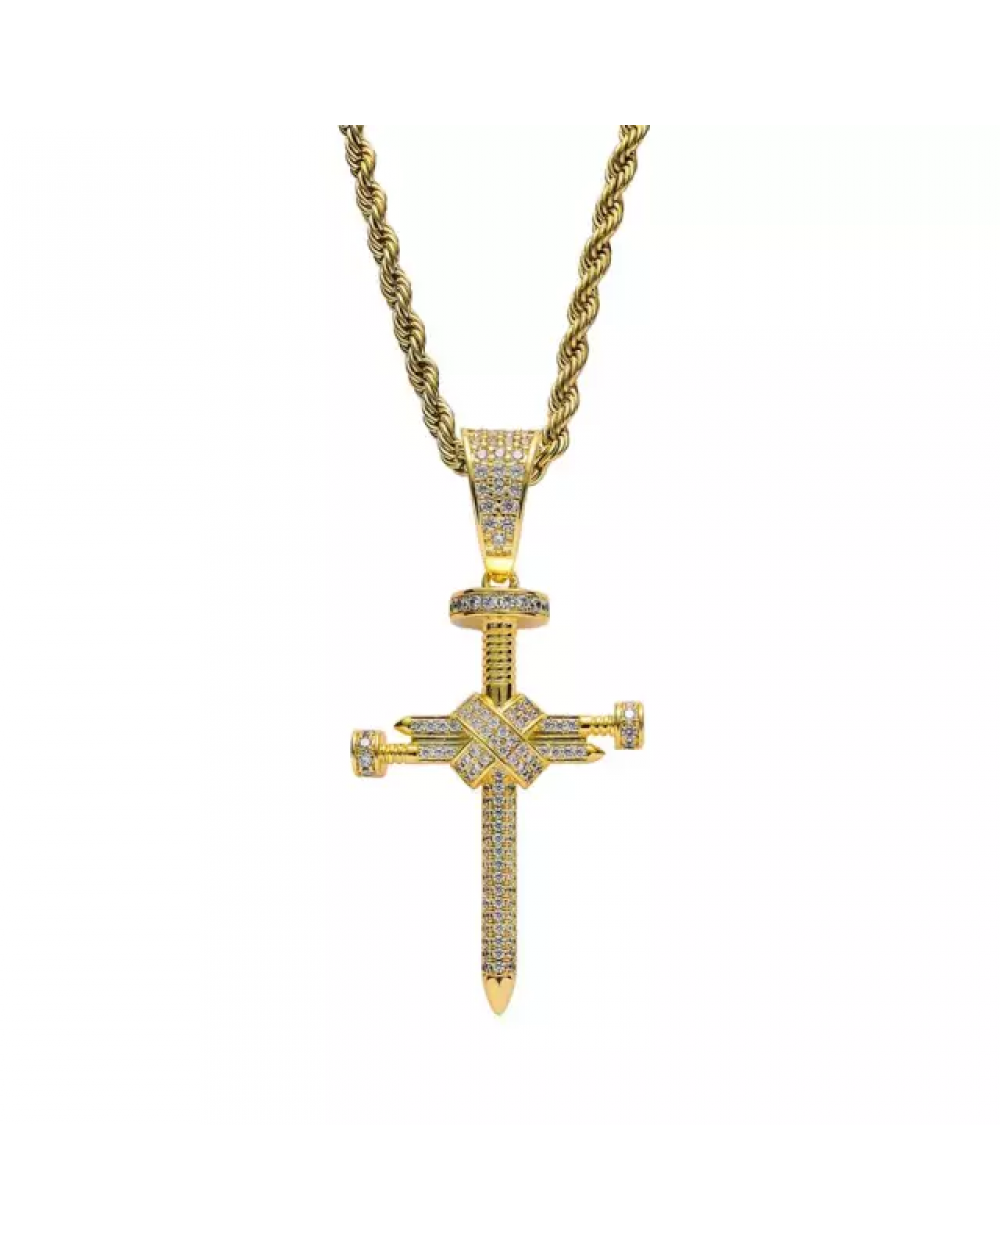 Pandantiv cruce formată din trei cuie încrustată cu cristale semiprețioase